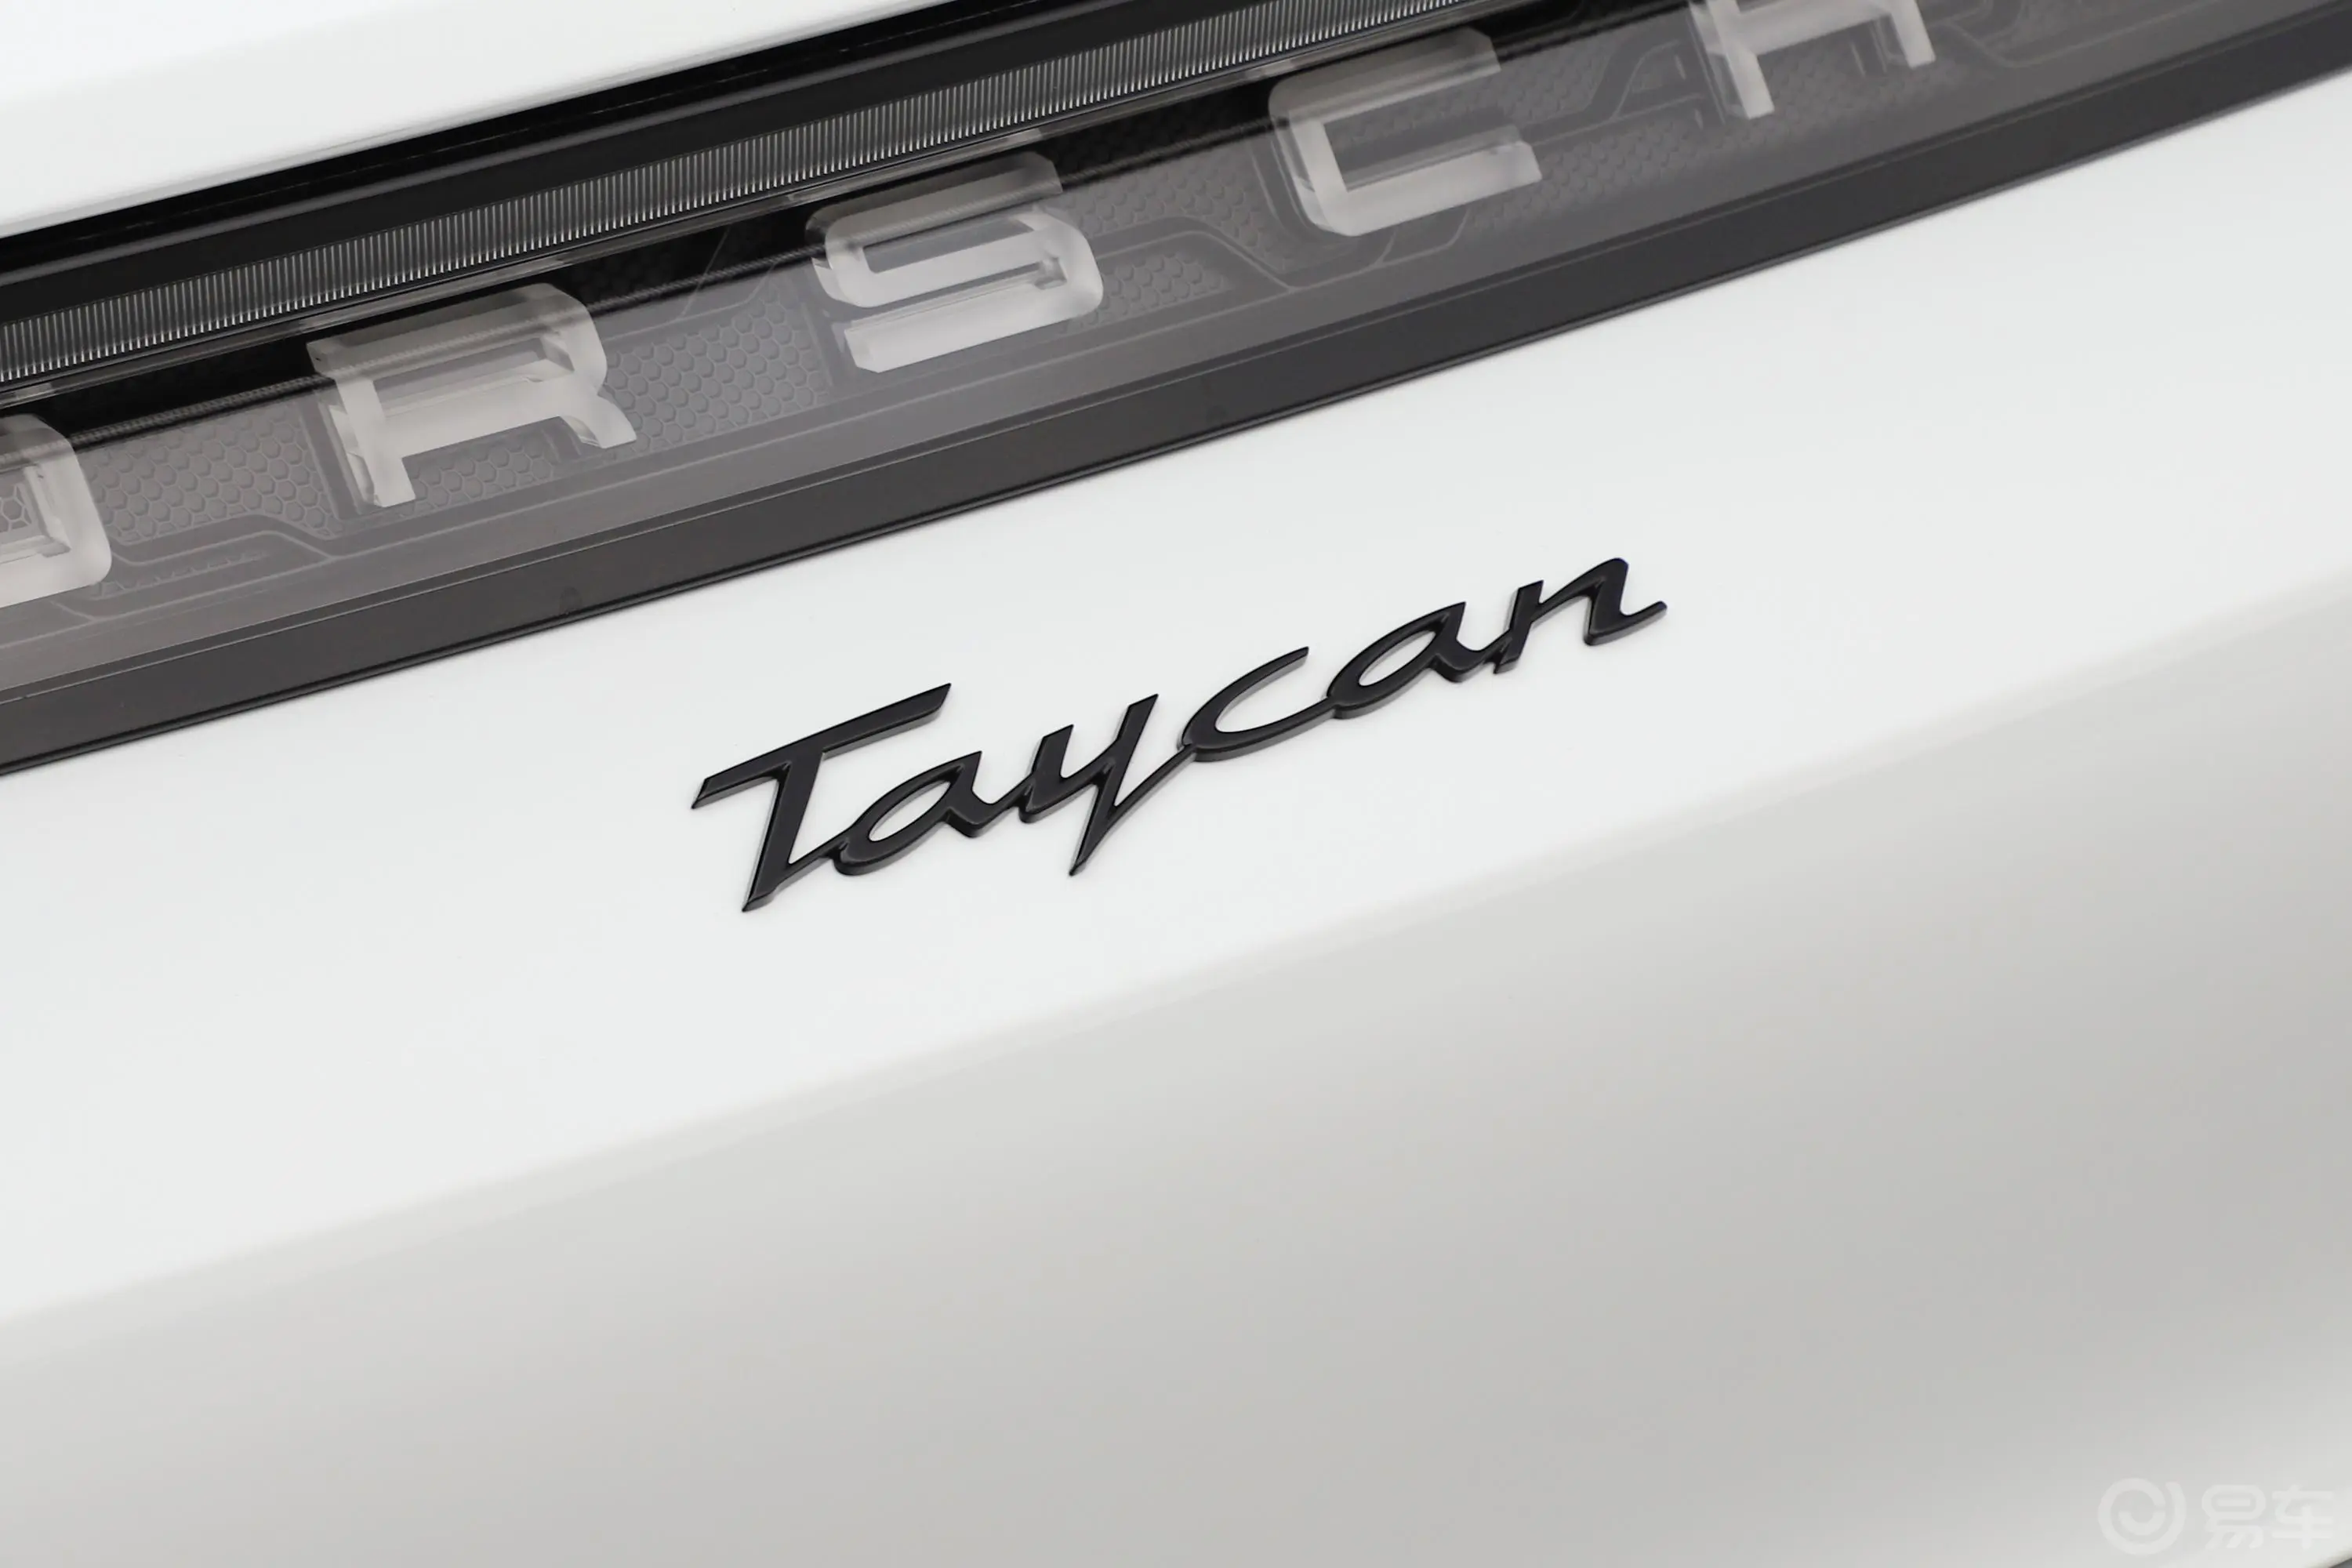 Taycan改款 Taycan外观细节